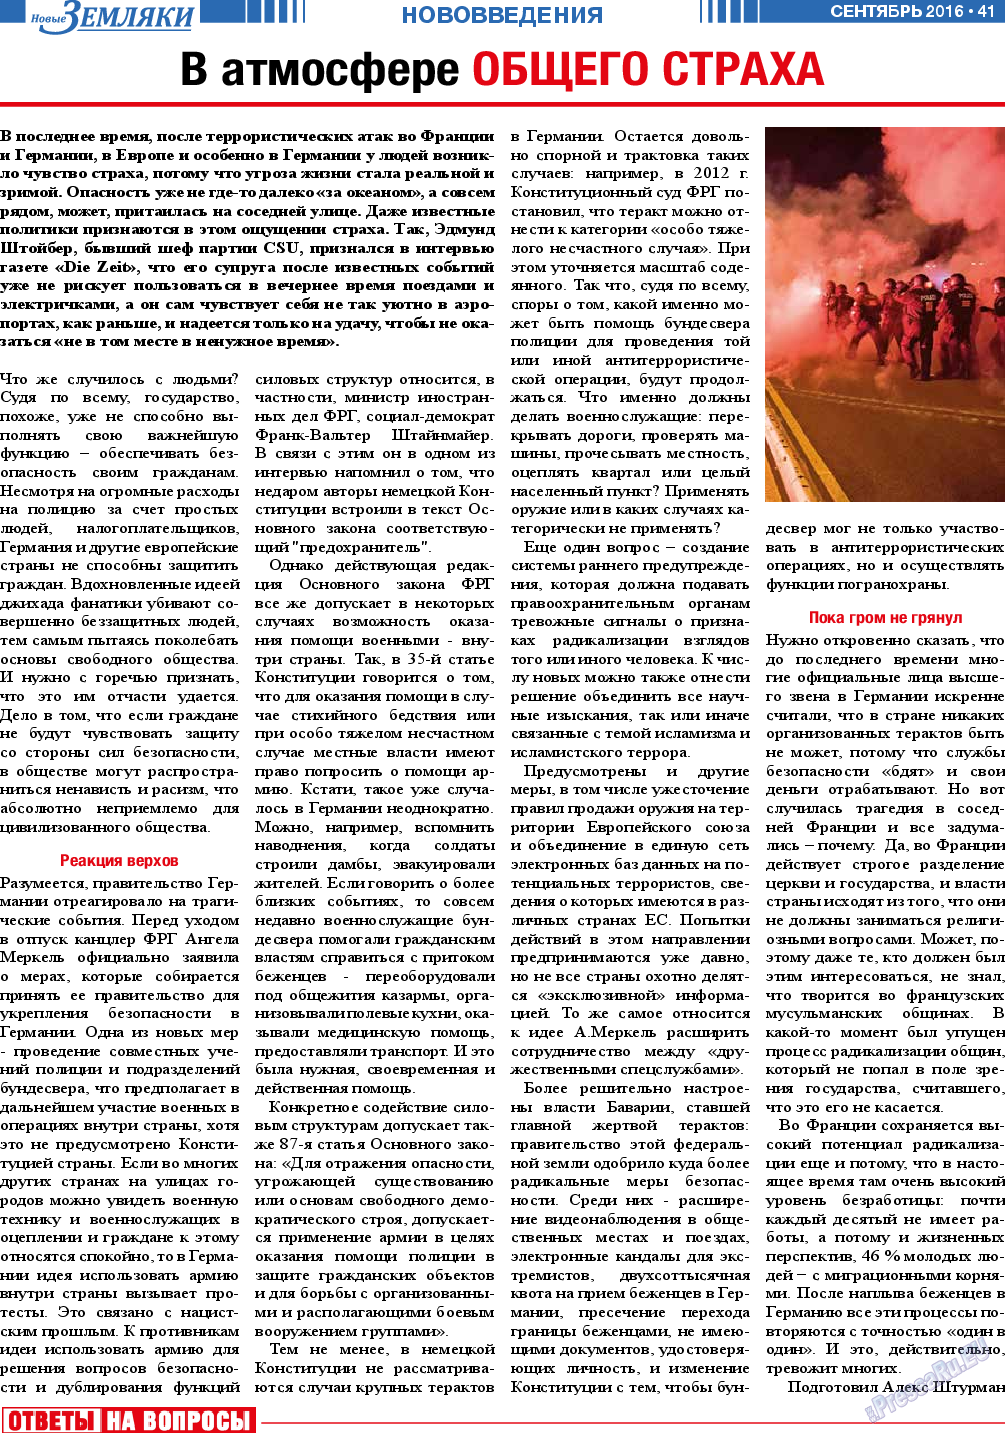 Новые Земляки (газета). 2016 год, номер 9, стр. 41